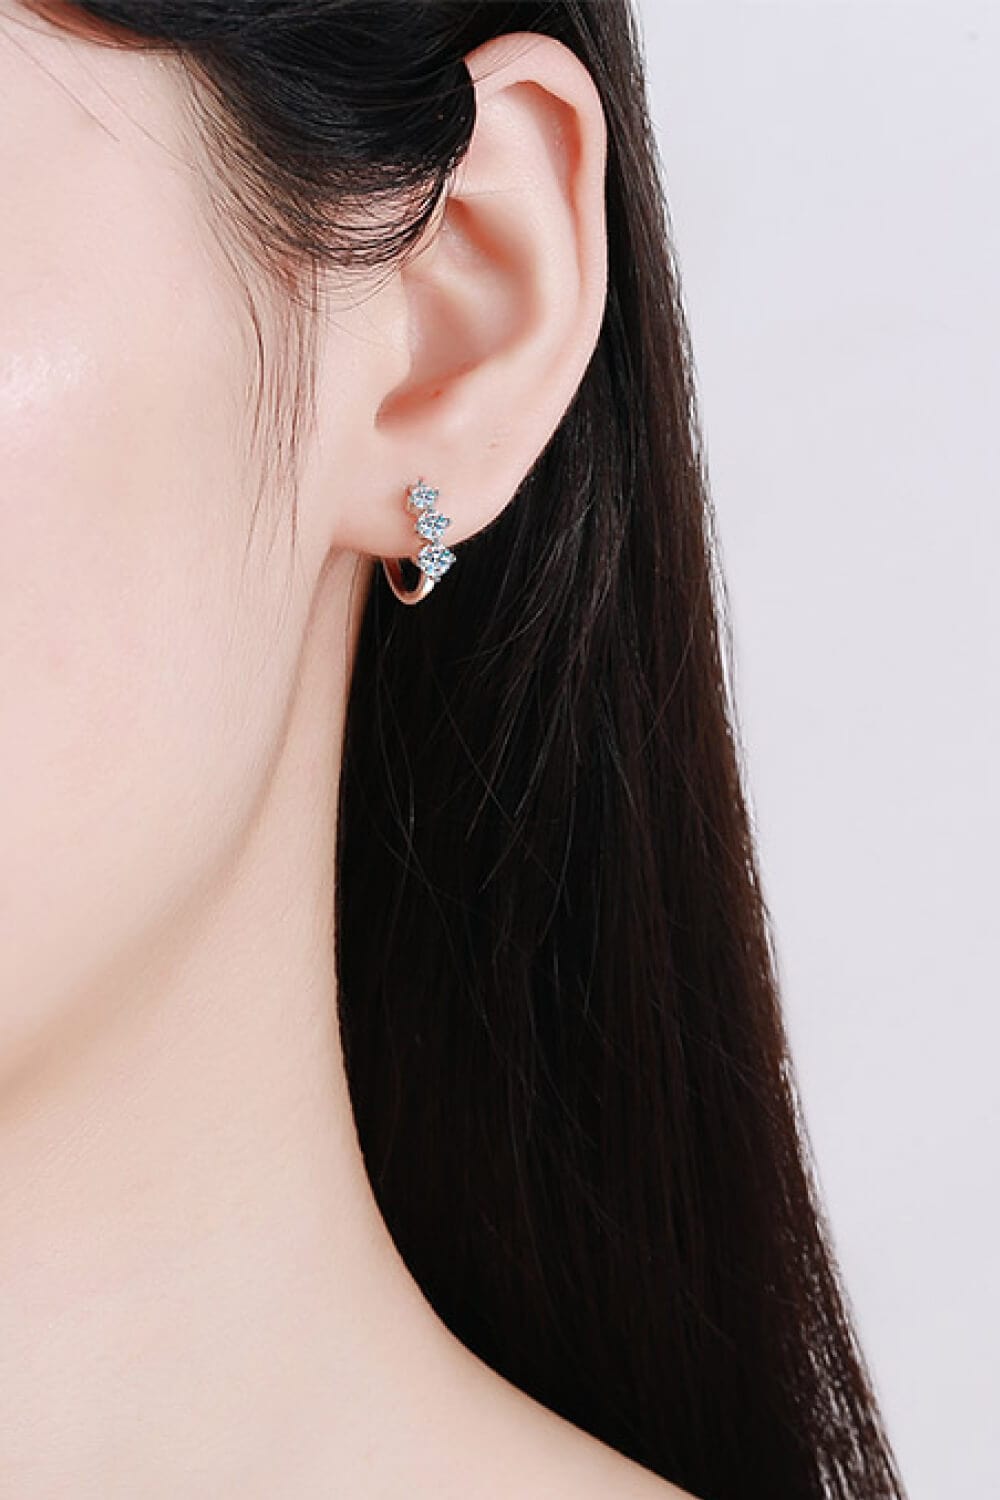 Sterling Silver Moissanite Huggie Earrings - Body By J'ne